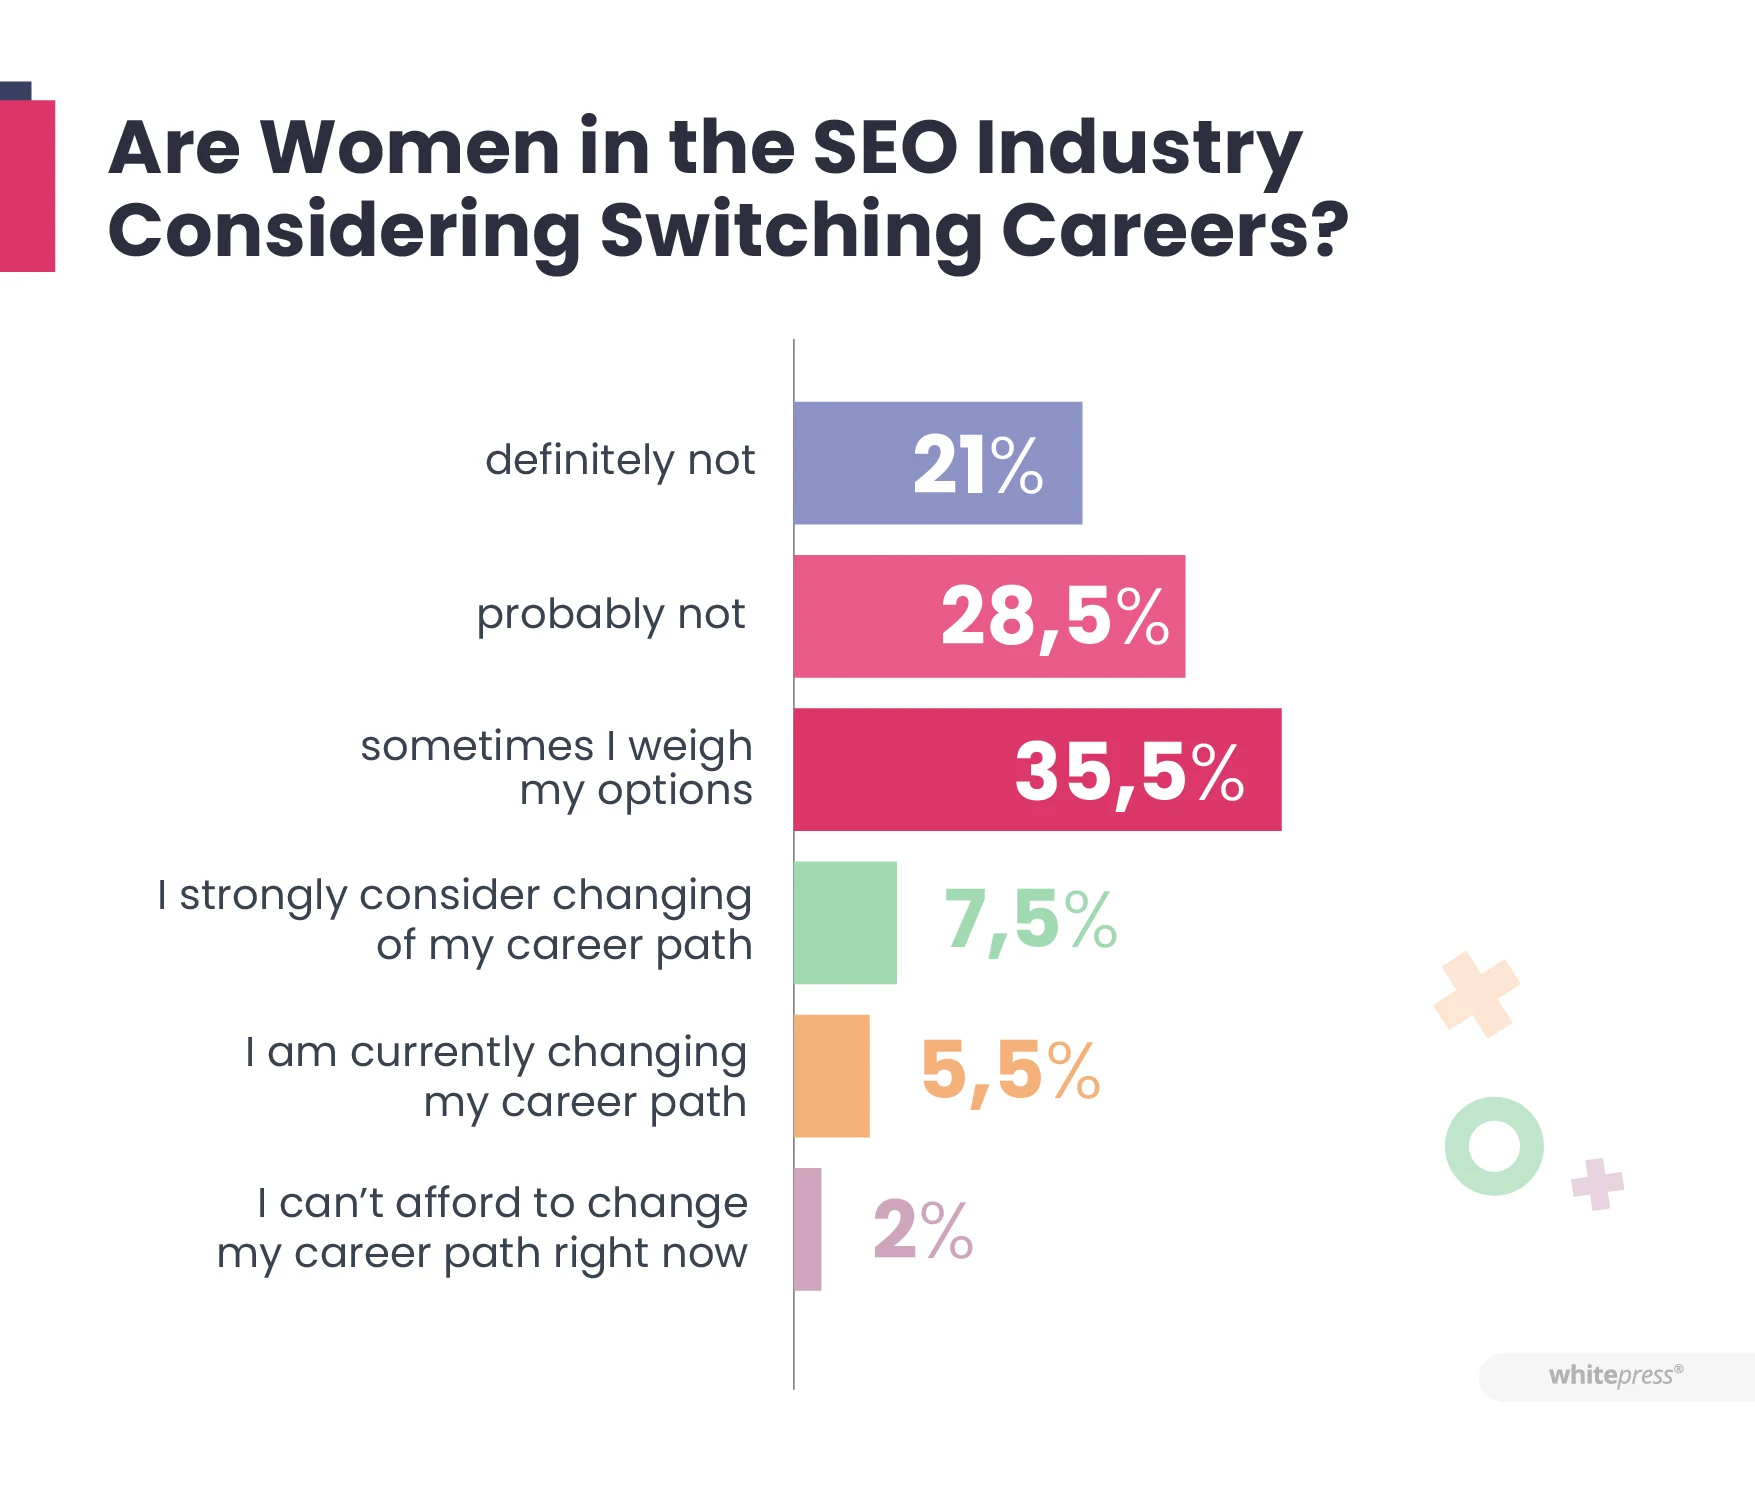 Чи розглядають жінки з галузі SEO можливість зміни кар’єрного шляху?